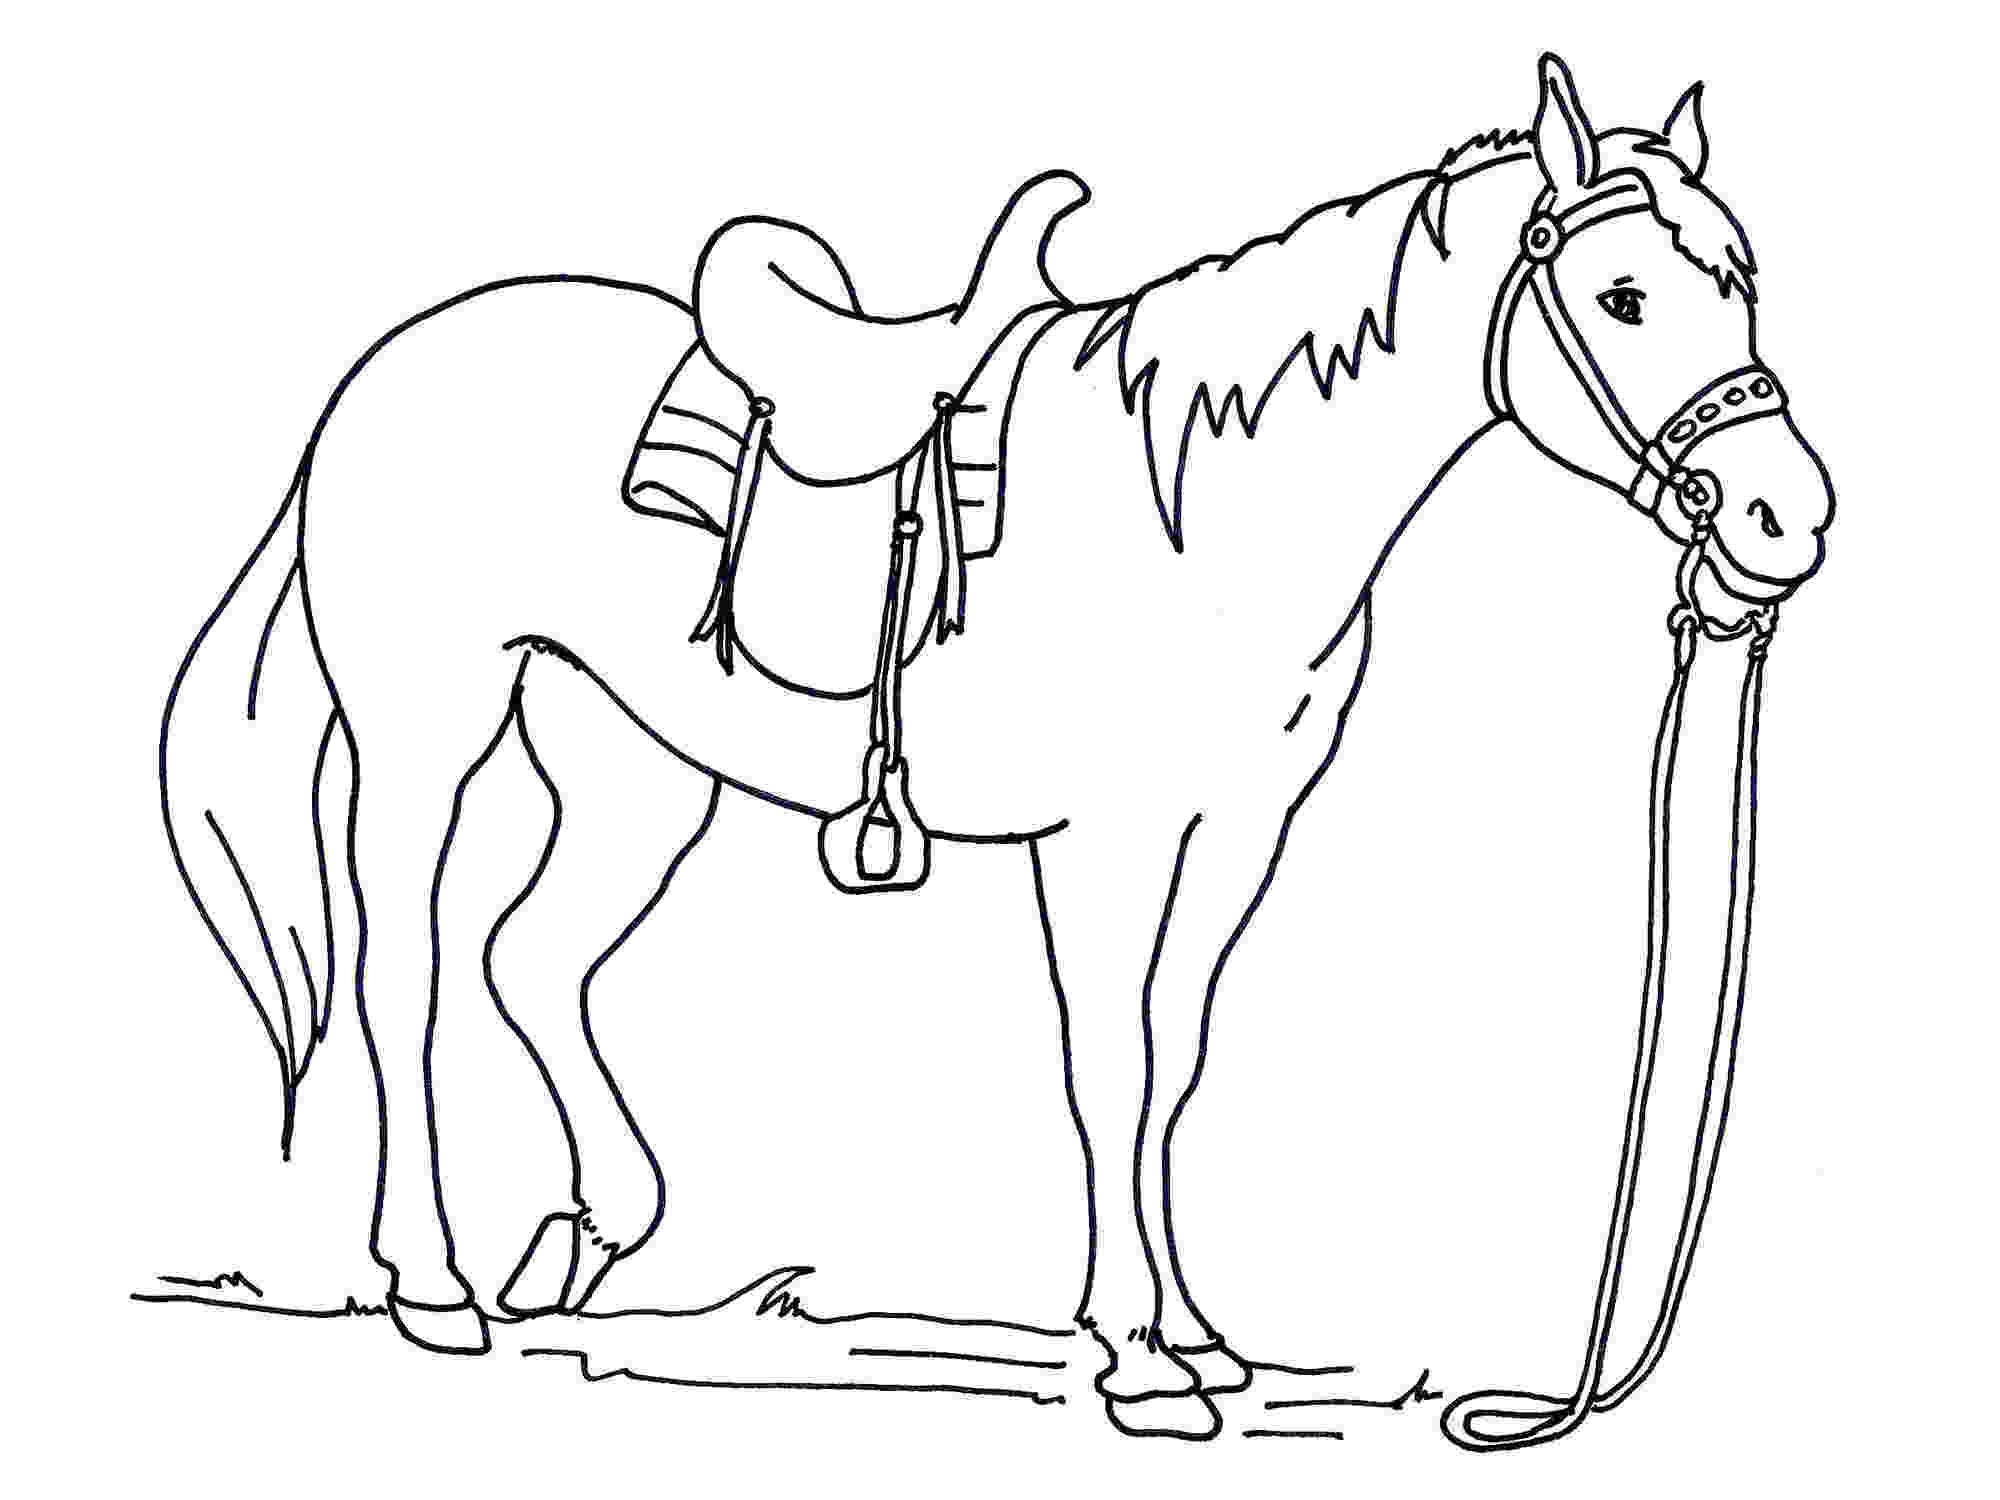 Cách vẽ con ngựa đơn giản đẹp nhất dành cho bé [Mẫu hình vẽ ngựa]